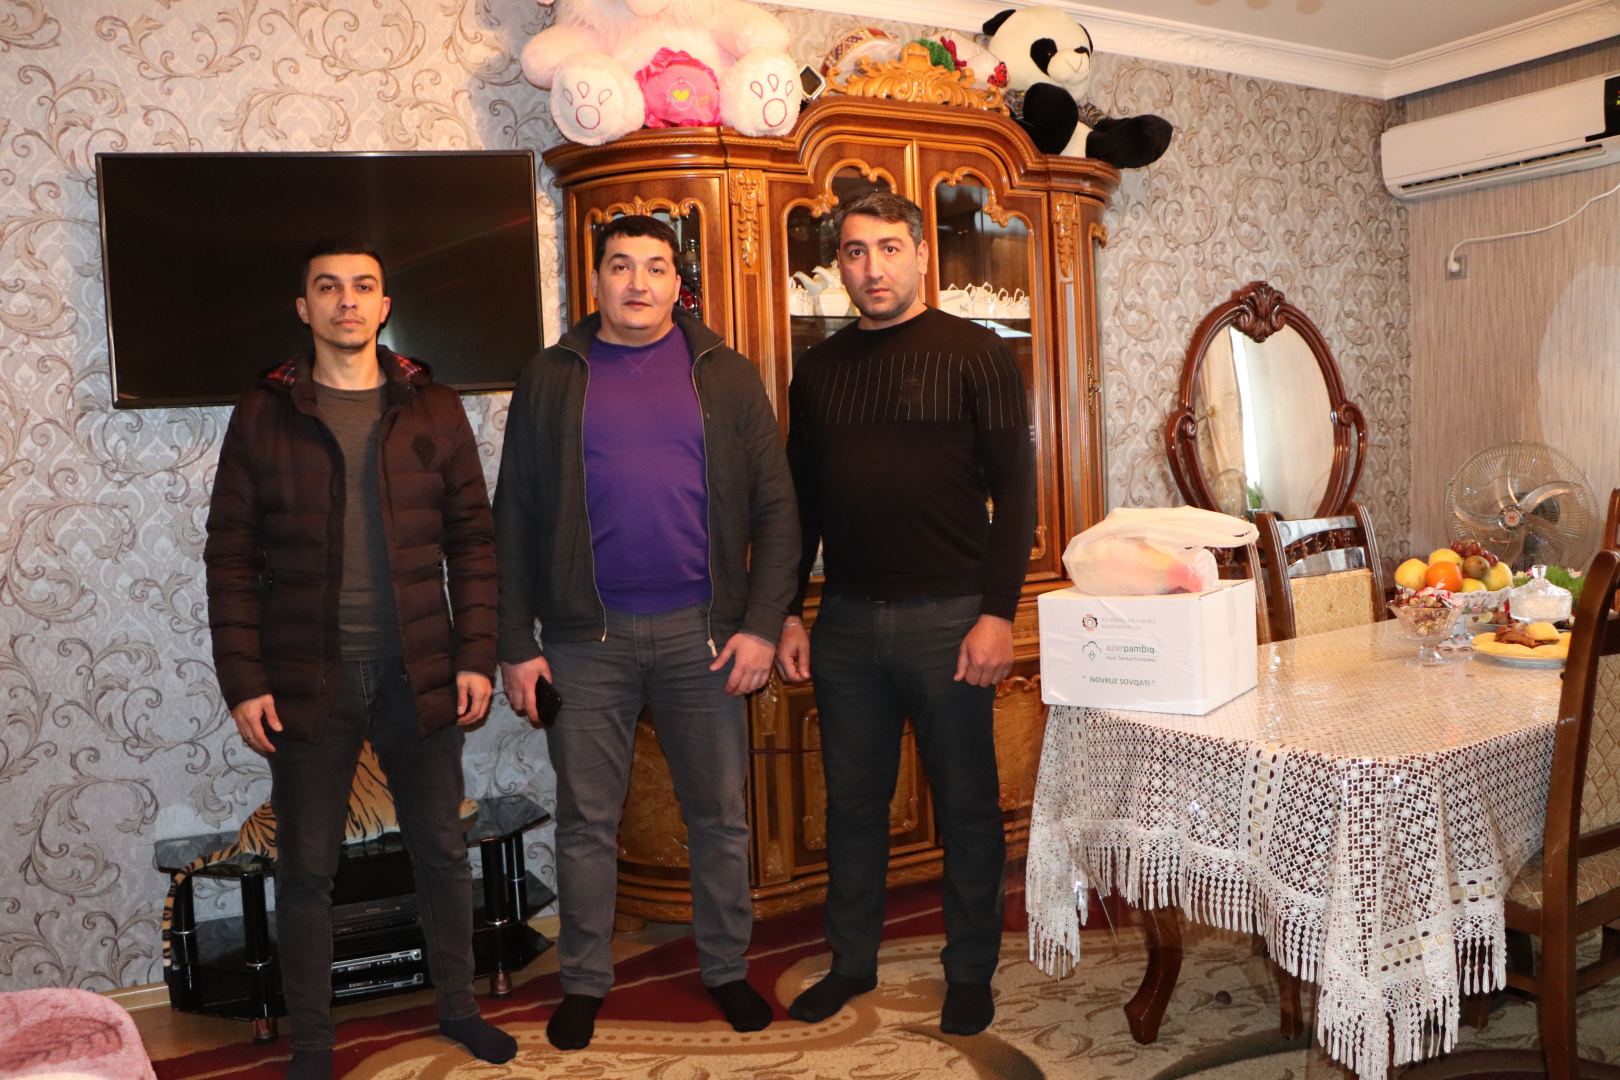 ООО "АПК Азерпамбыг" передало семьям шехидов и ветеранам войны гостинцы по случаю праздника Новруз (ФОТО)